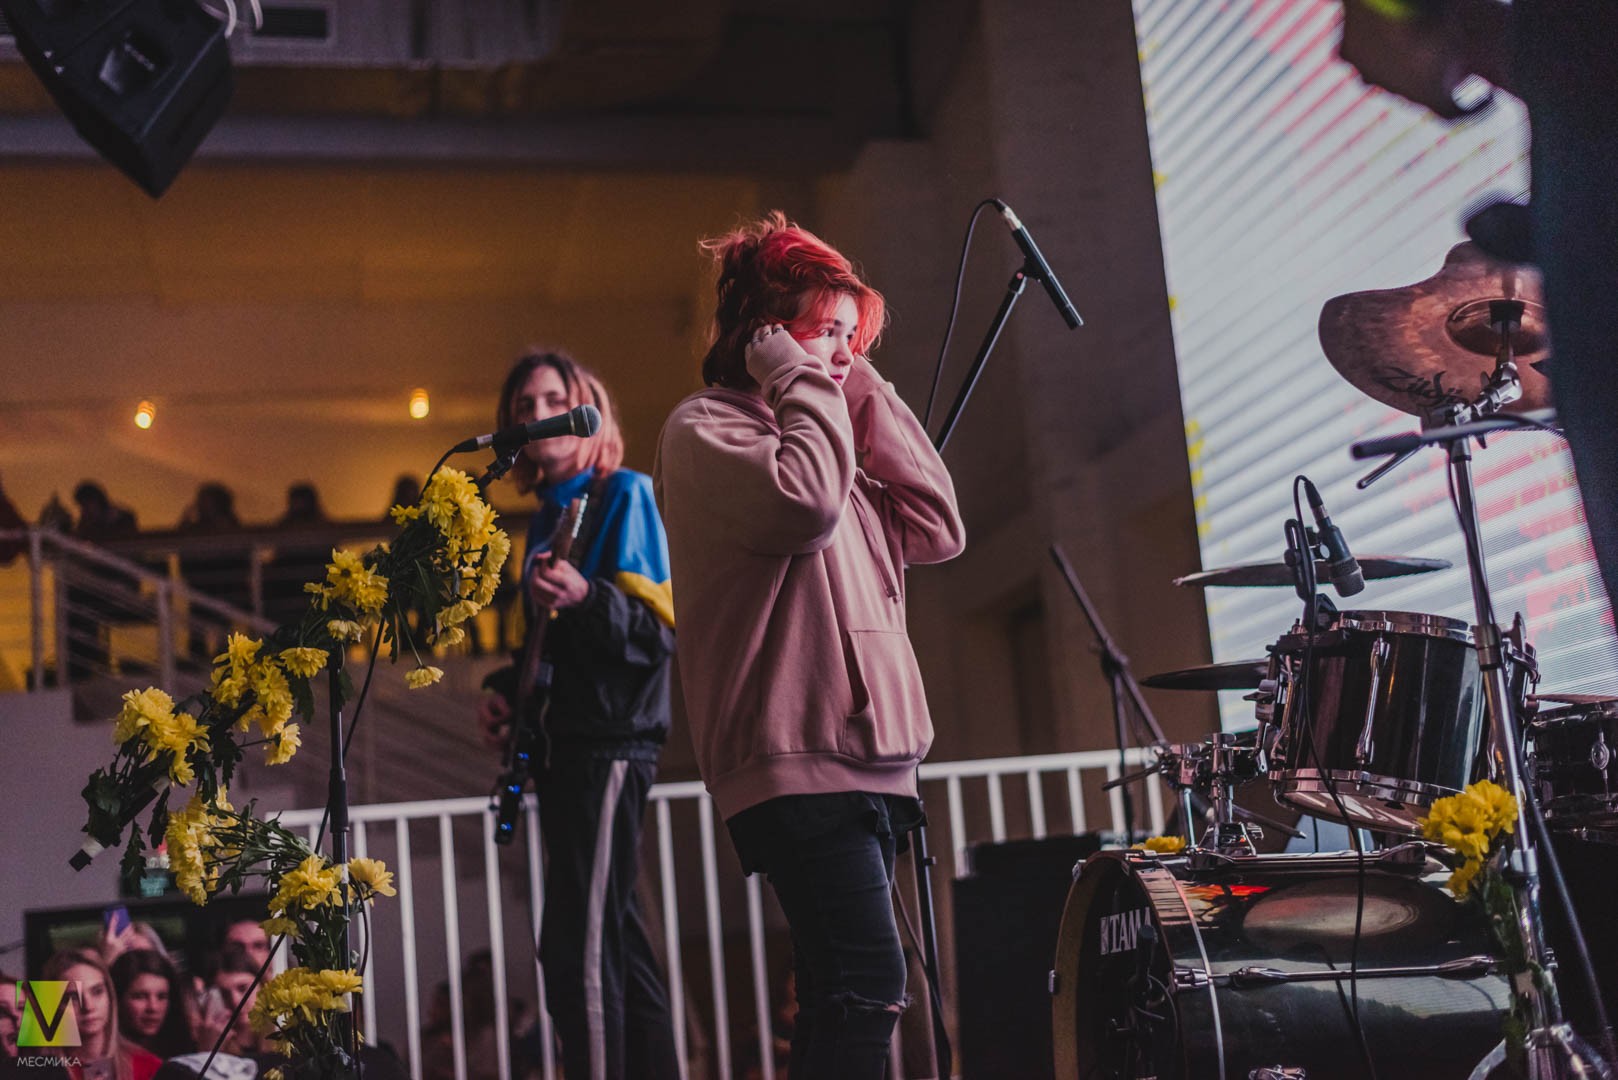 Алёна Швец выступила в Нижнем Новгороде 9 декабря в клубе "Milo Concert Hall".